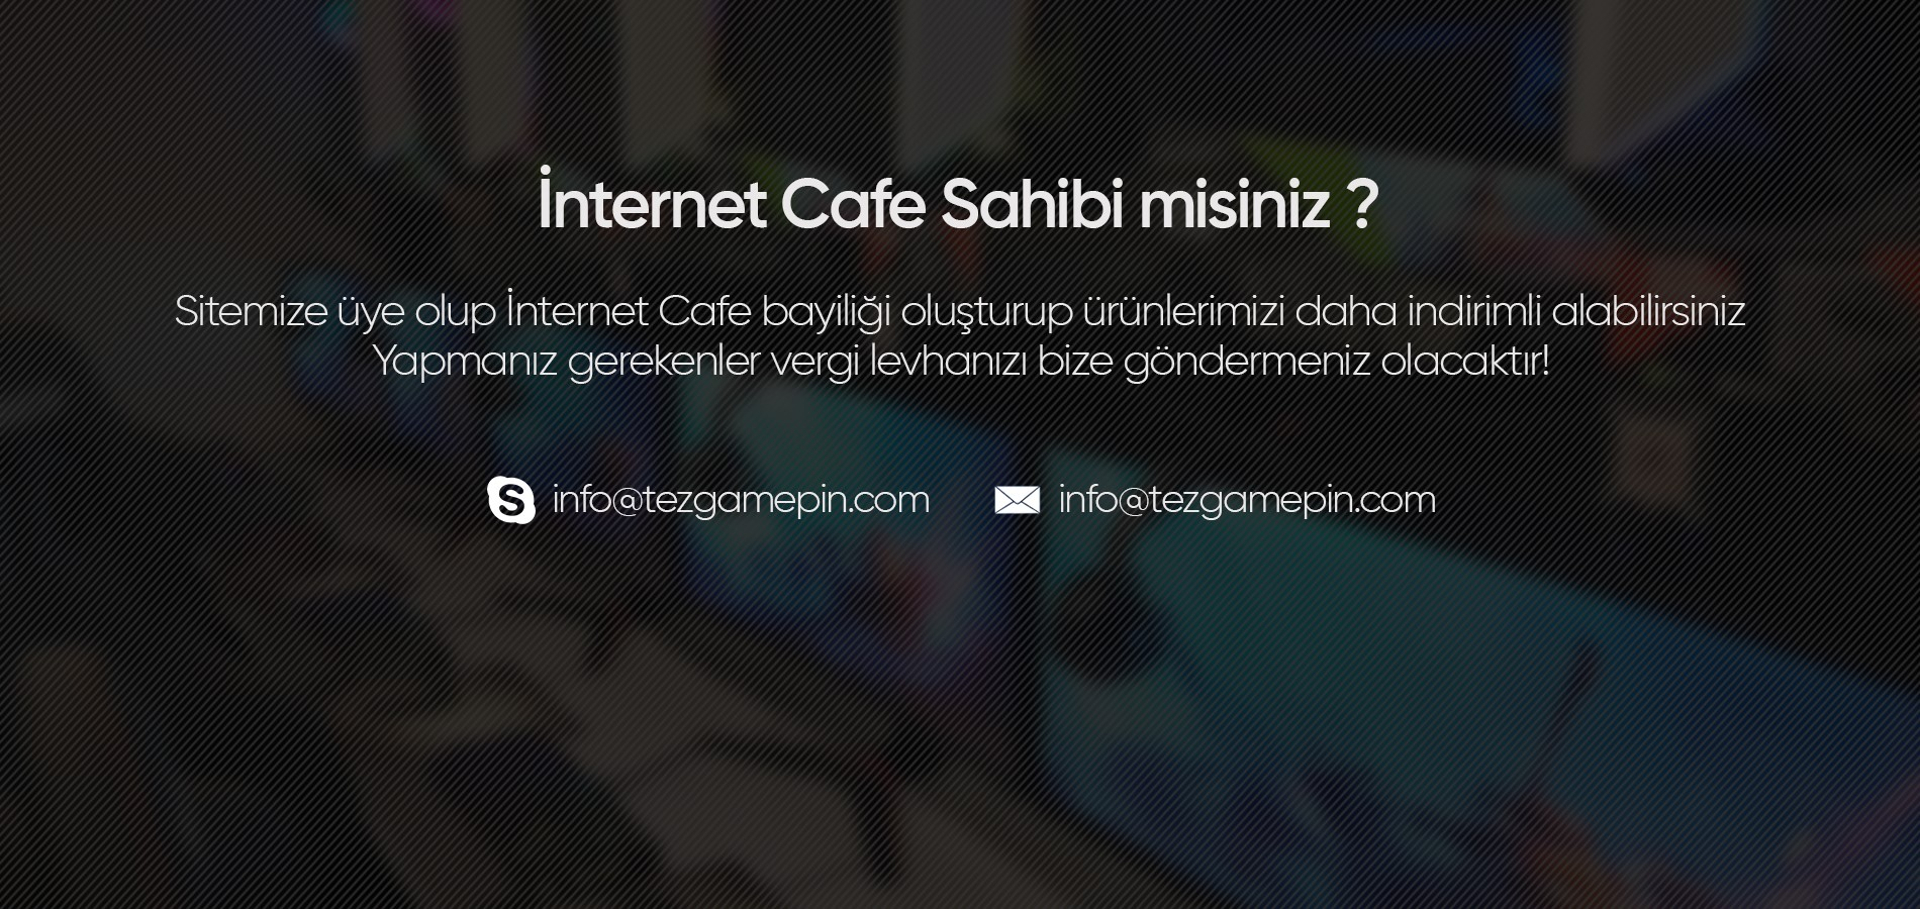 İnternet Cafe sahibi misiniz?